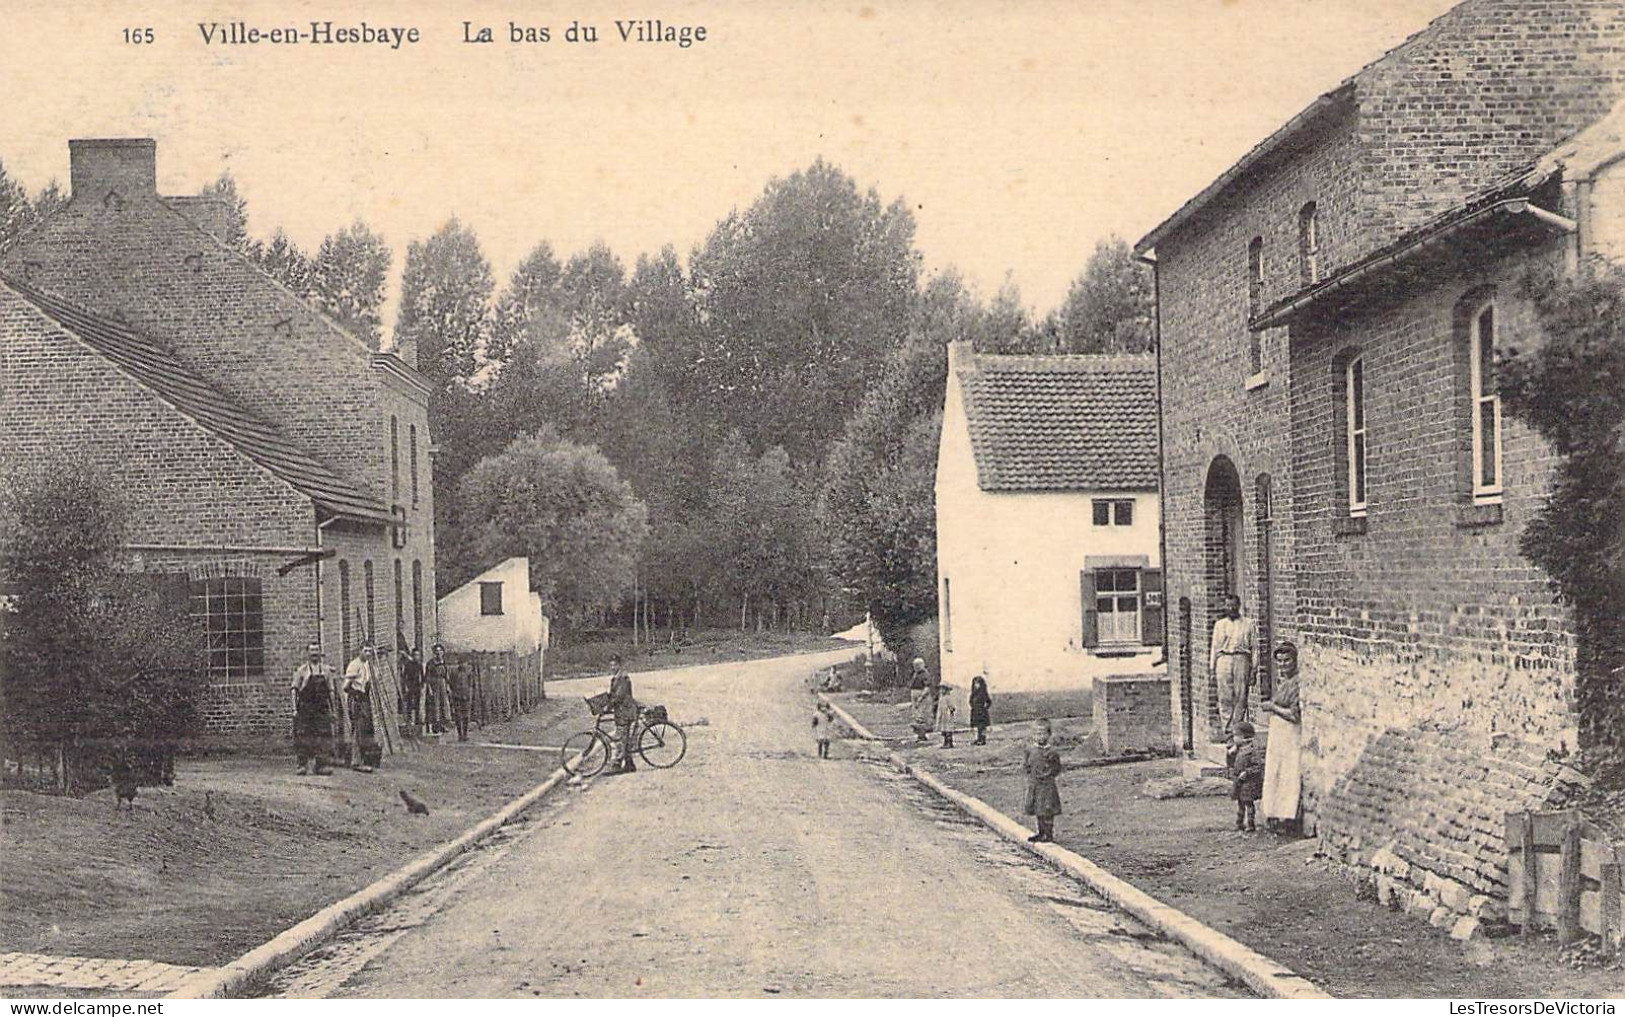 Belgique - Villes En Hesbaye - Le Bas Du Village - Animé - Vélo - Carte Postale Ancienne - Borgworm